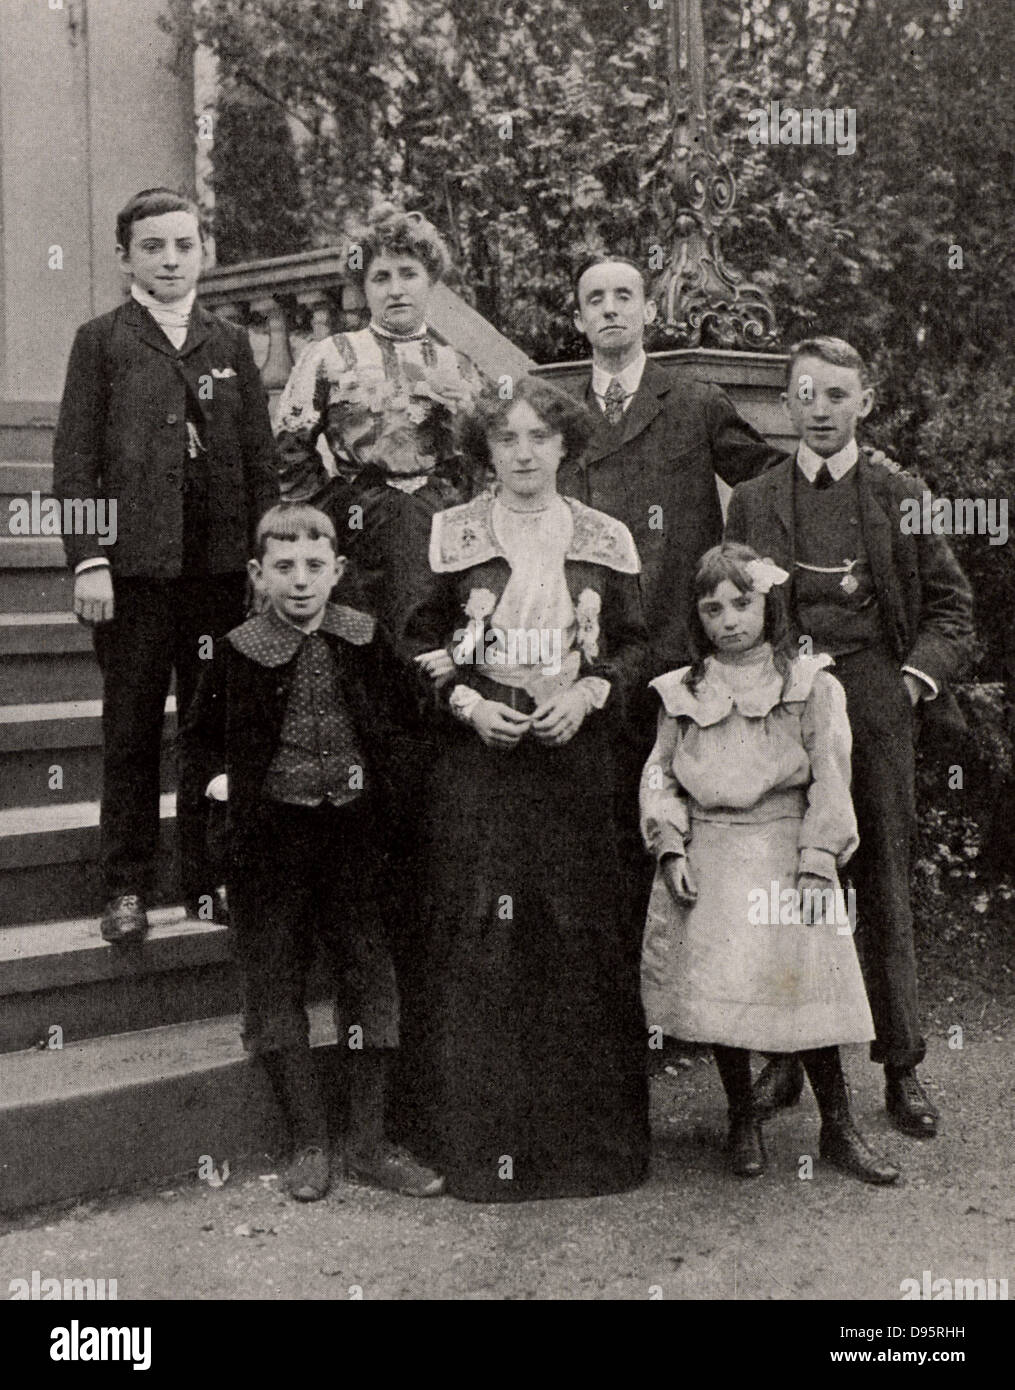 Dan Leno (1860-1904) Né George Wild Galvin. Comédien populaire anglais cockney et pantomime dame. Leno avec sa femme et sa famille en 1903, après sa guérison d'une maladie. Banque D'Images